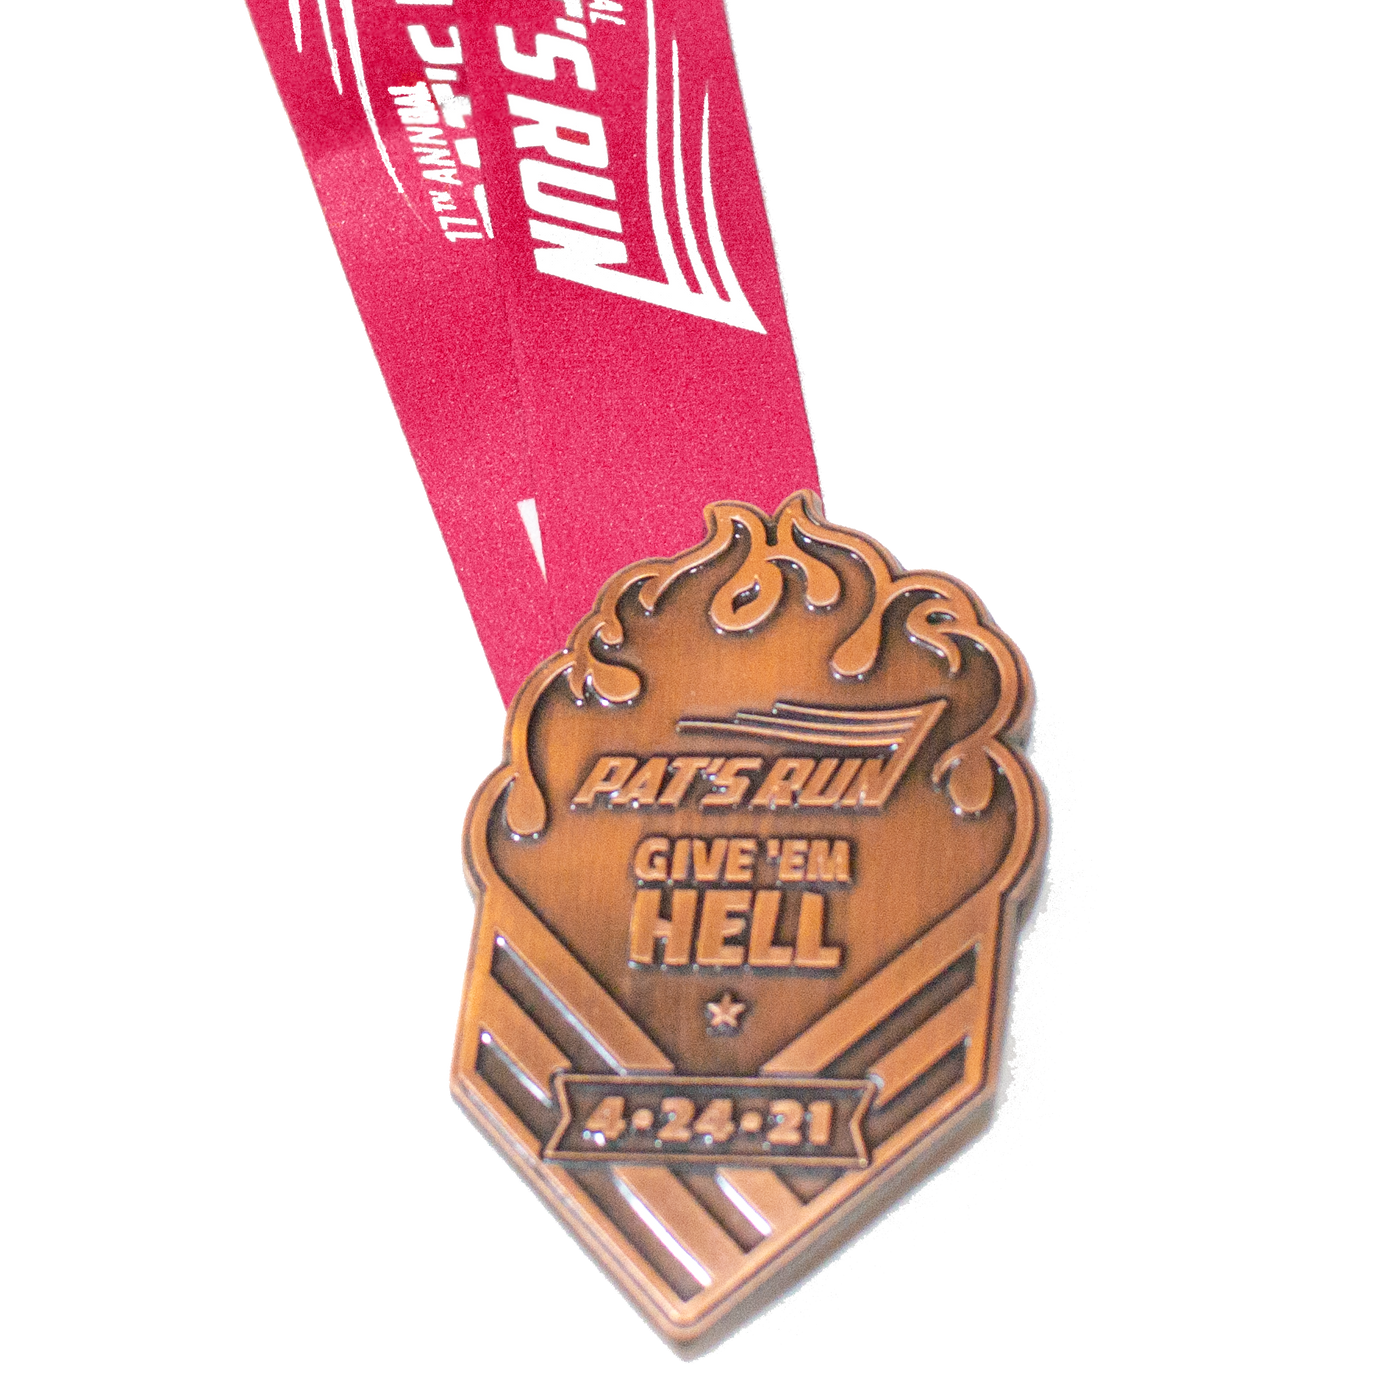 2021 Pat's Run Finisher Medal